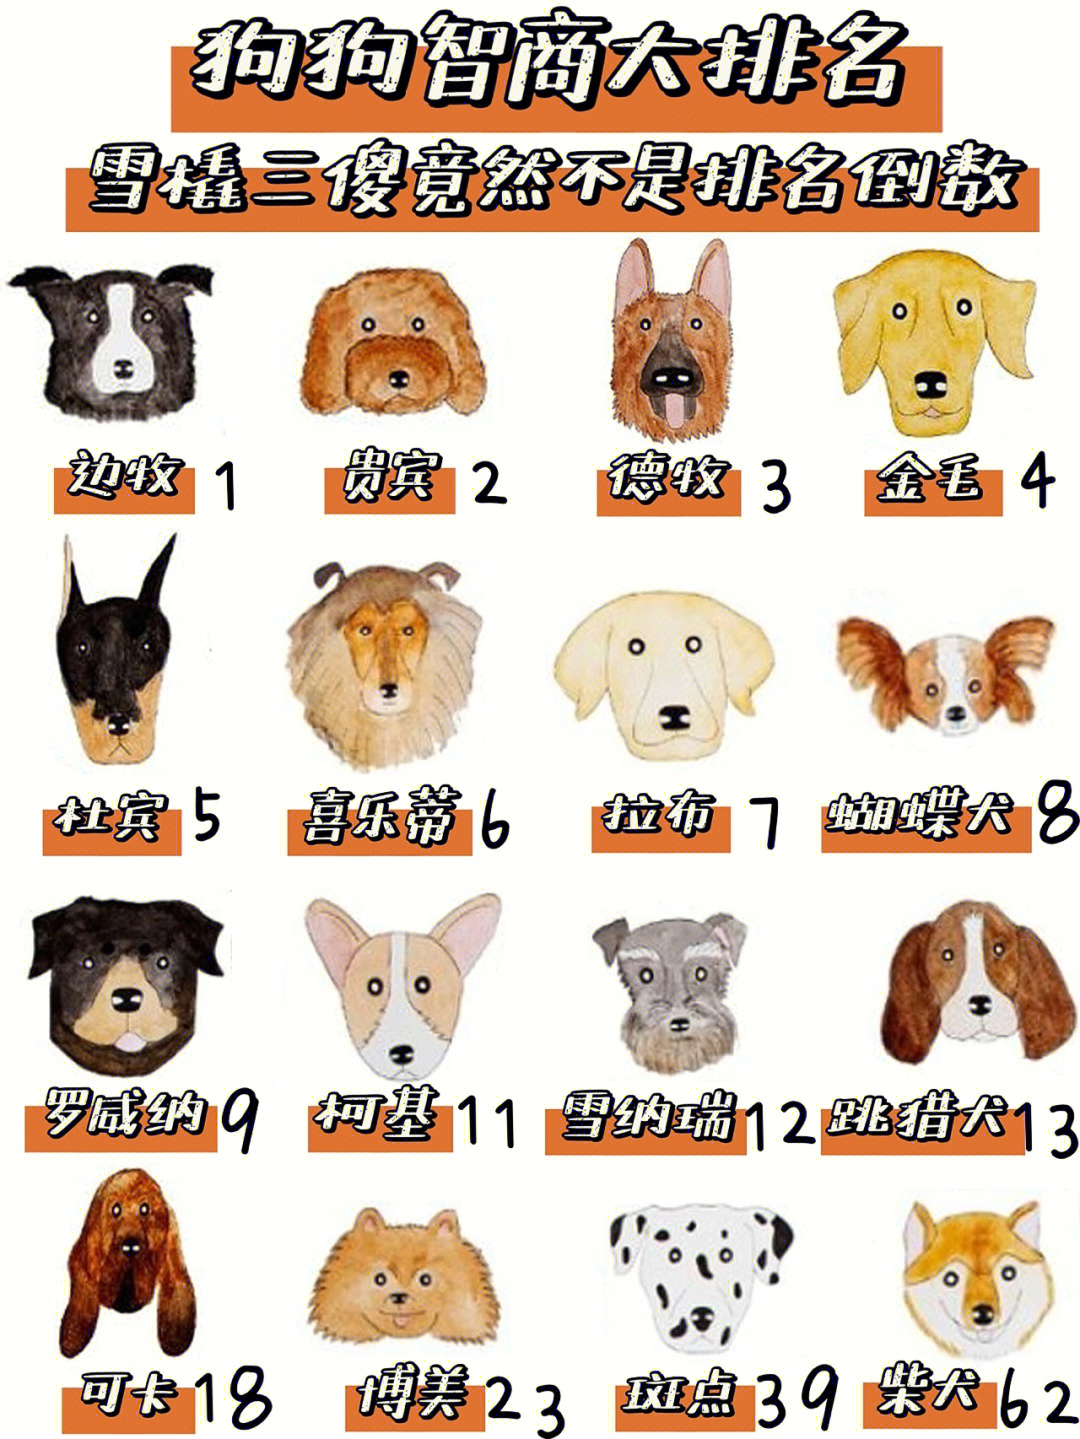 十大聪明名犬 排行榜图片